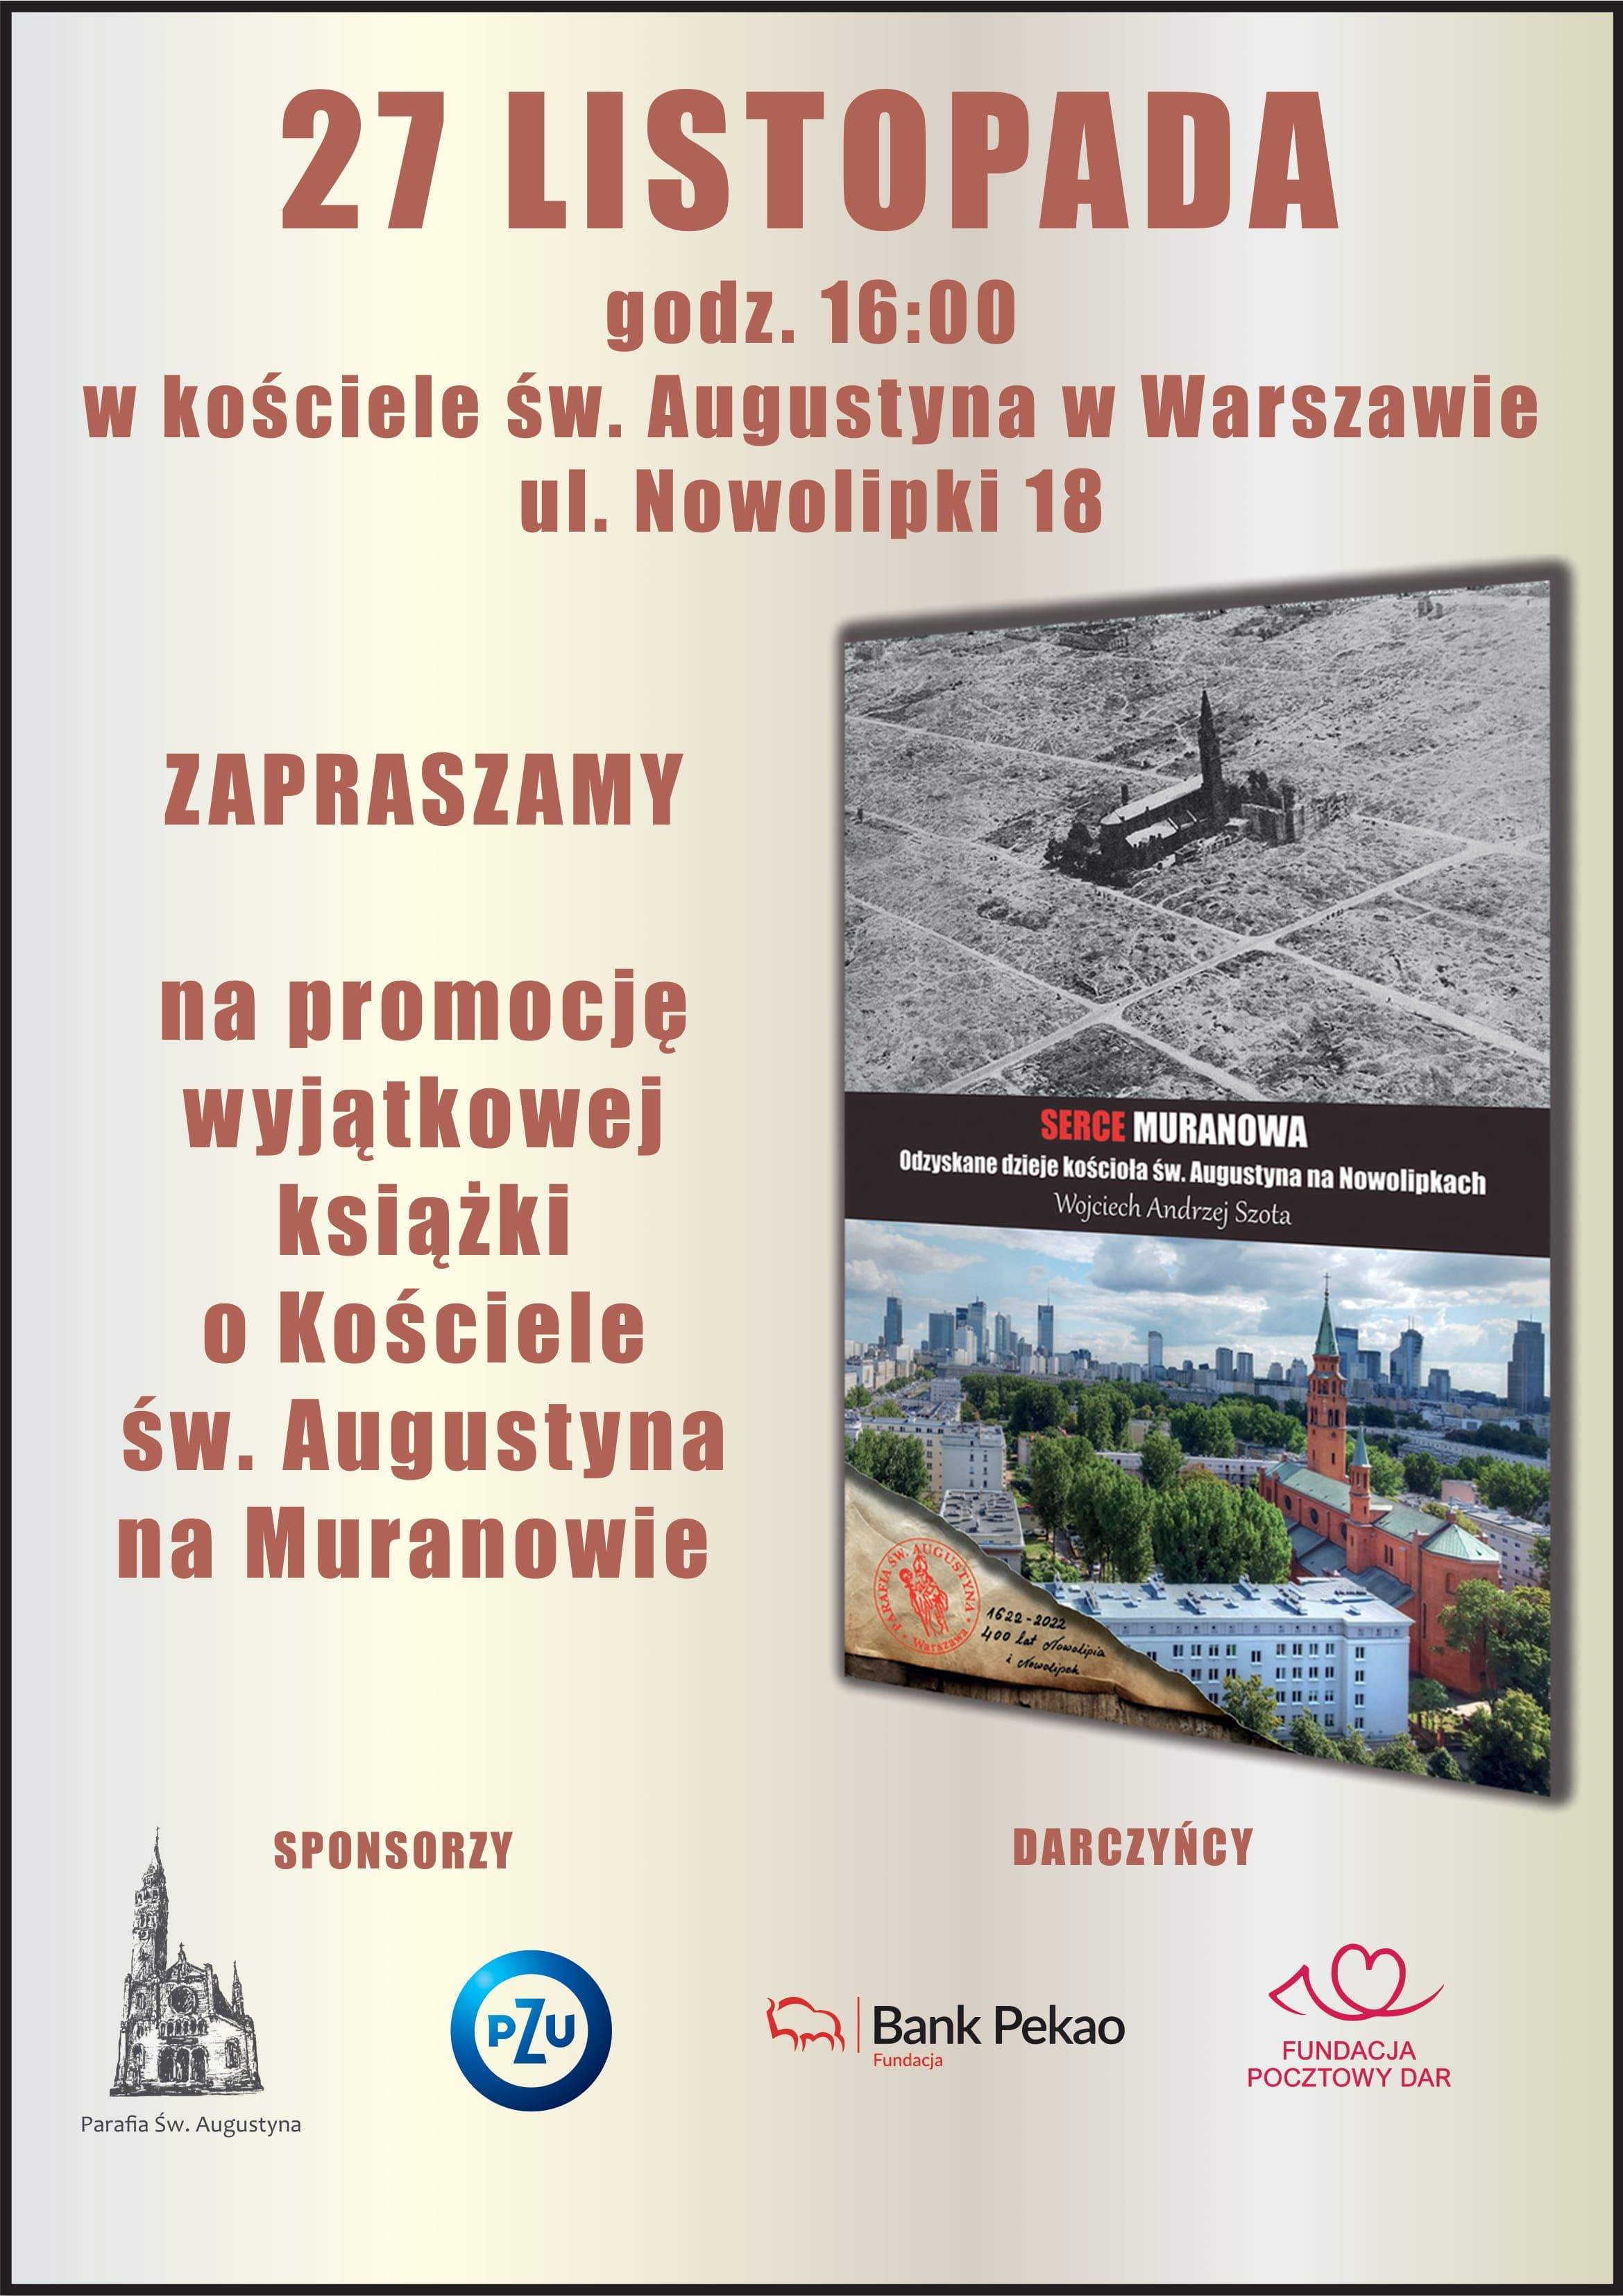 27 listopada 2022 r., godz. 16.00 zapraszamy na promocję książki "Serce Muranowa. Odzyskane dzieje kościoła św. Augustyna w Warszawie"